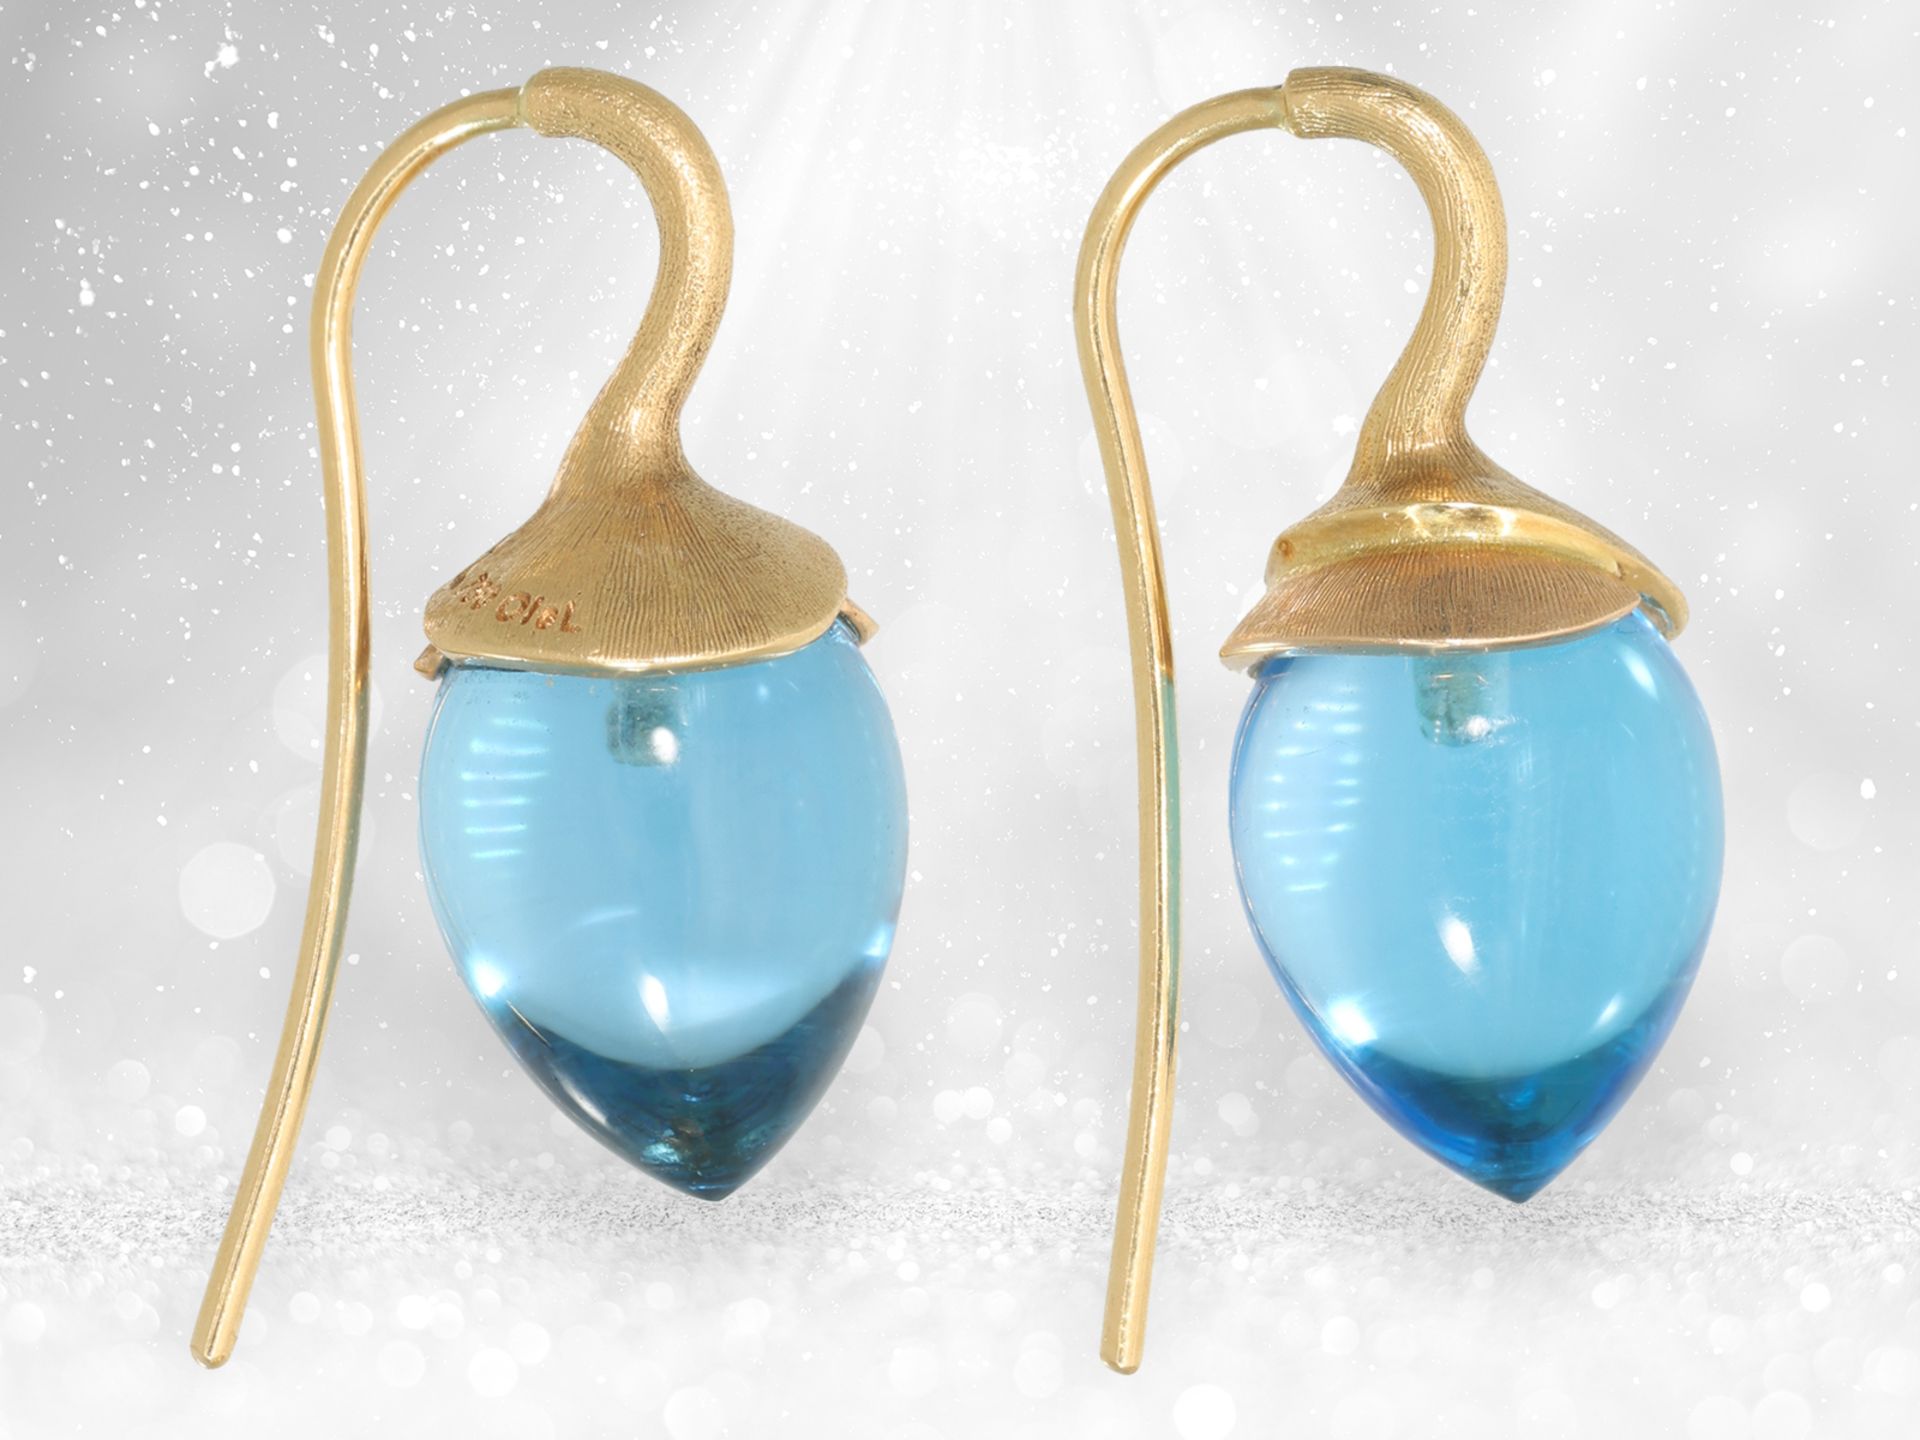 Ausgefallene goldene Designer-Topas-Ohrringe aus dem Hause Ole Lynggaard, Modell "Lotus Drop" - Bild 4 aus 4